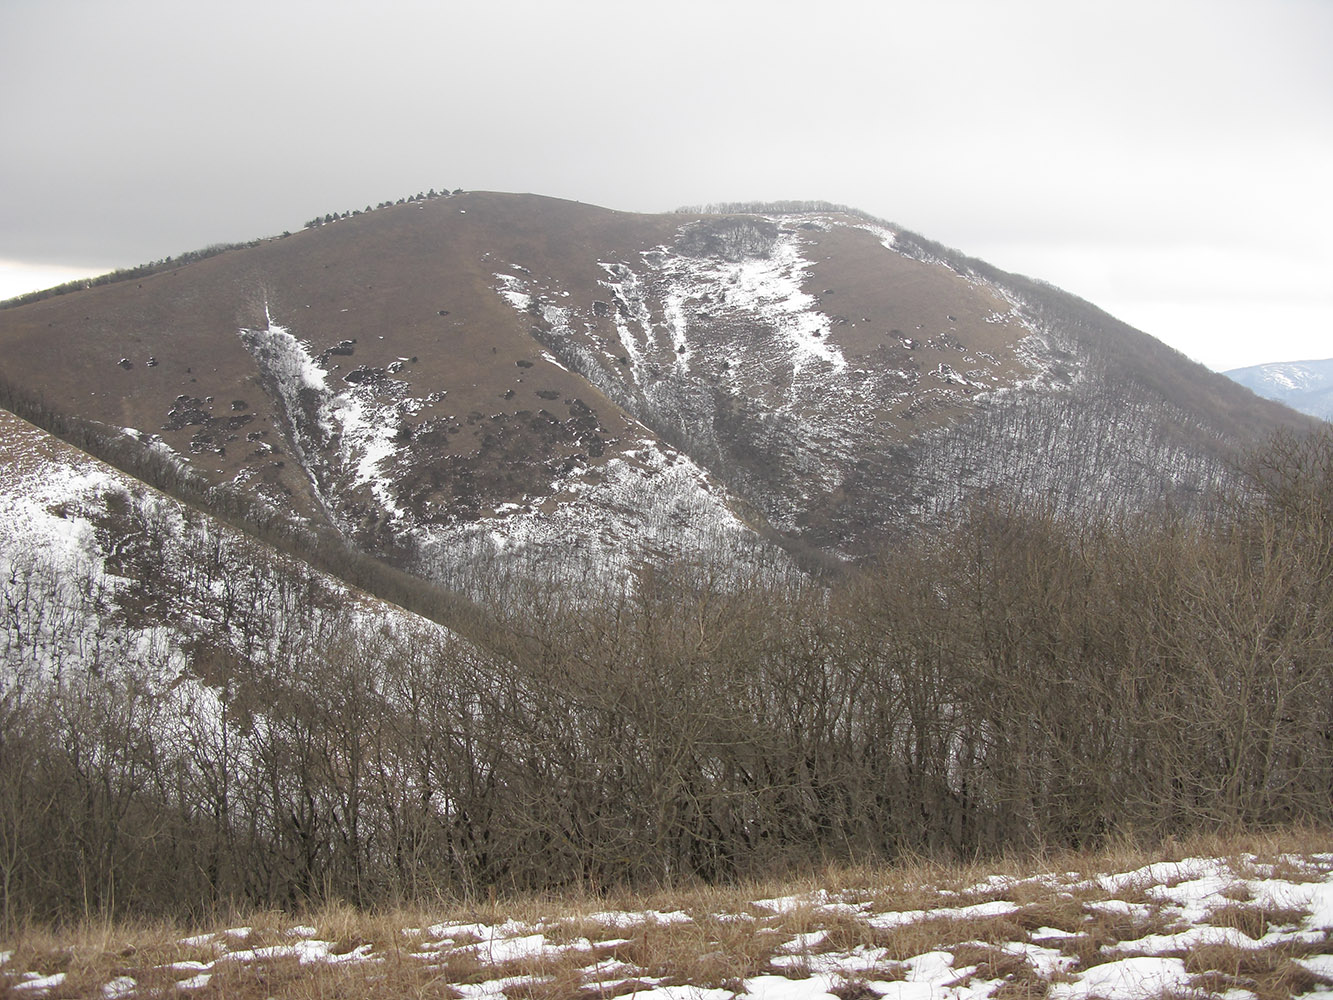 Квашин Бугор, image of landscape/habitat.